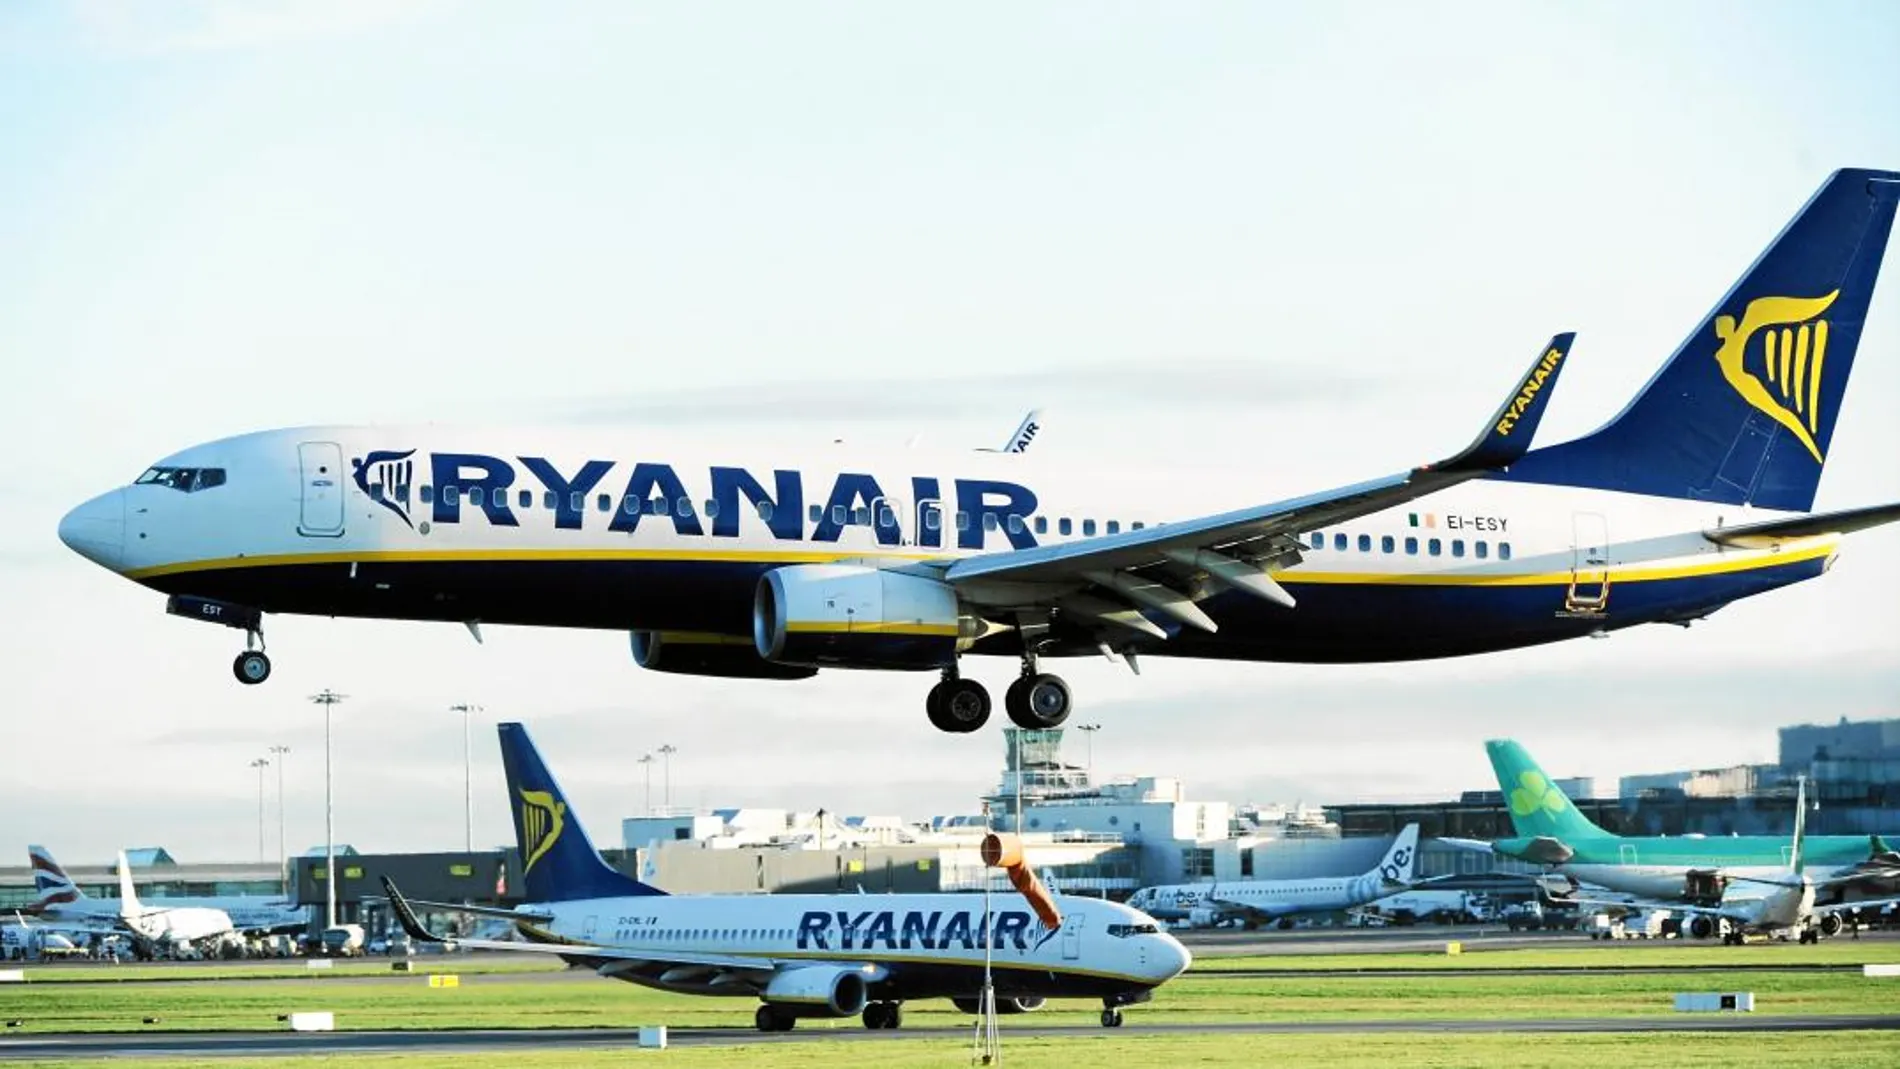 La aerolínea irlandesa ya ha sufrido este año dos huelgas de sus tripulantes de cabina, que amenazan con una tercera. En la imagen, el aeropuerto de Dublín